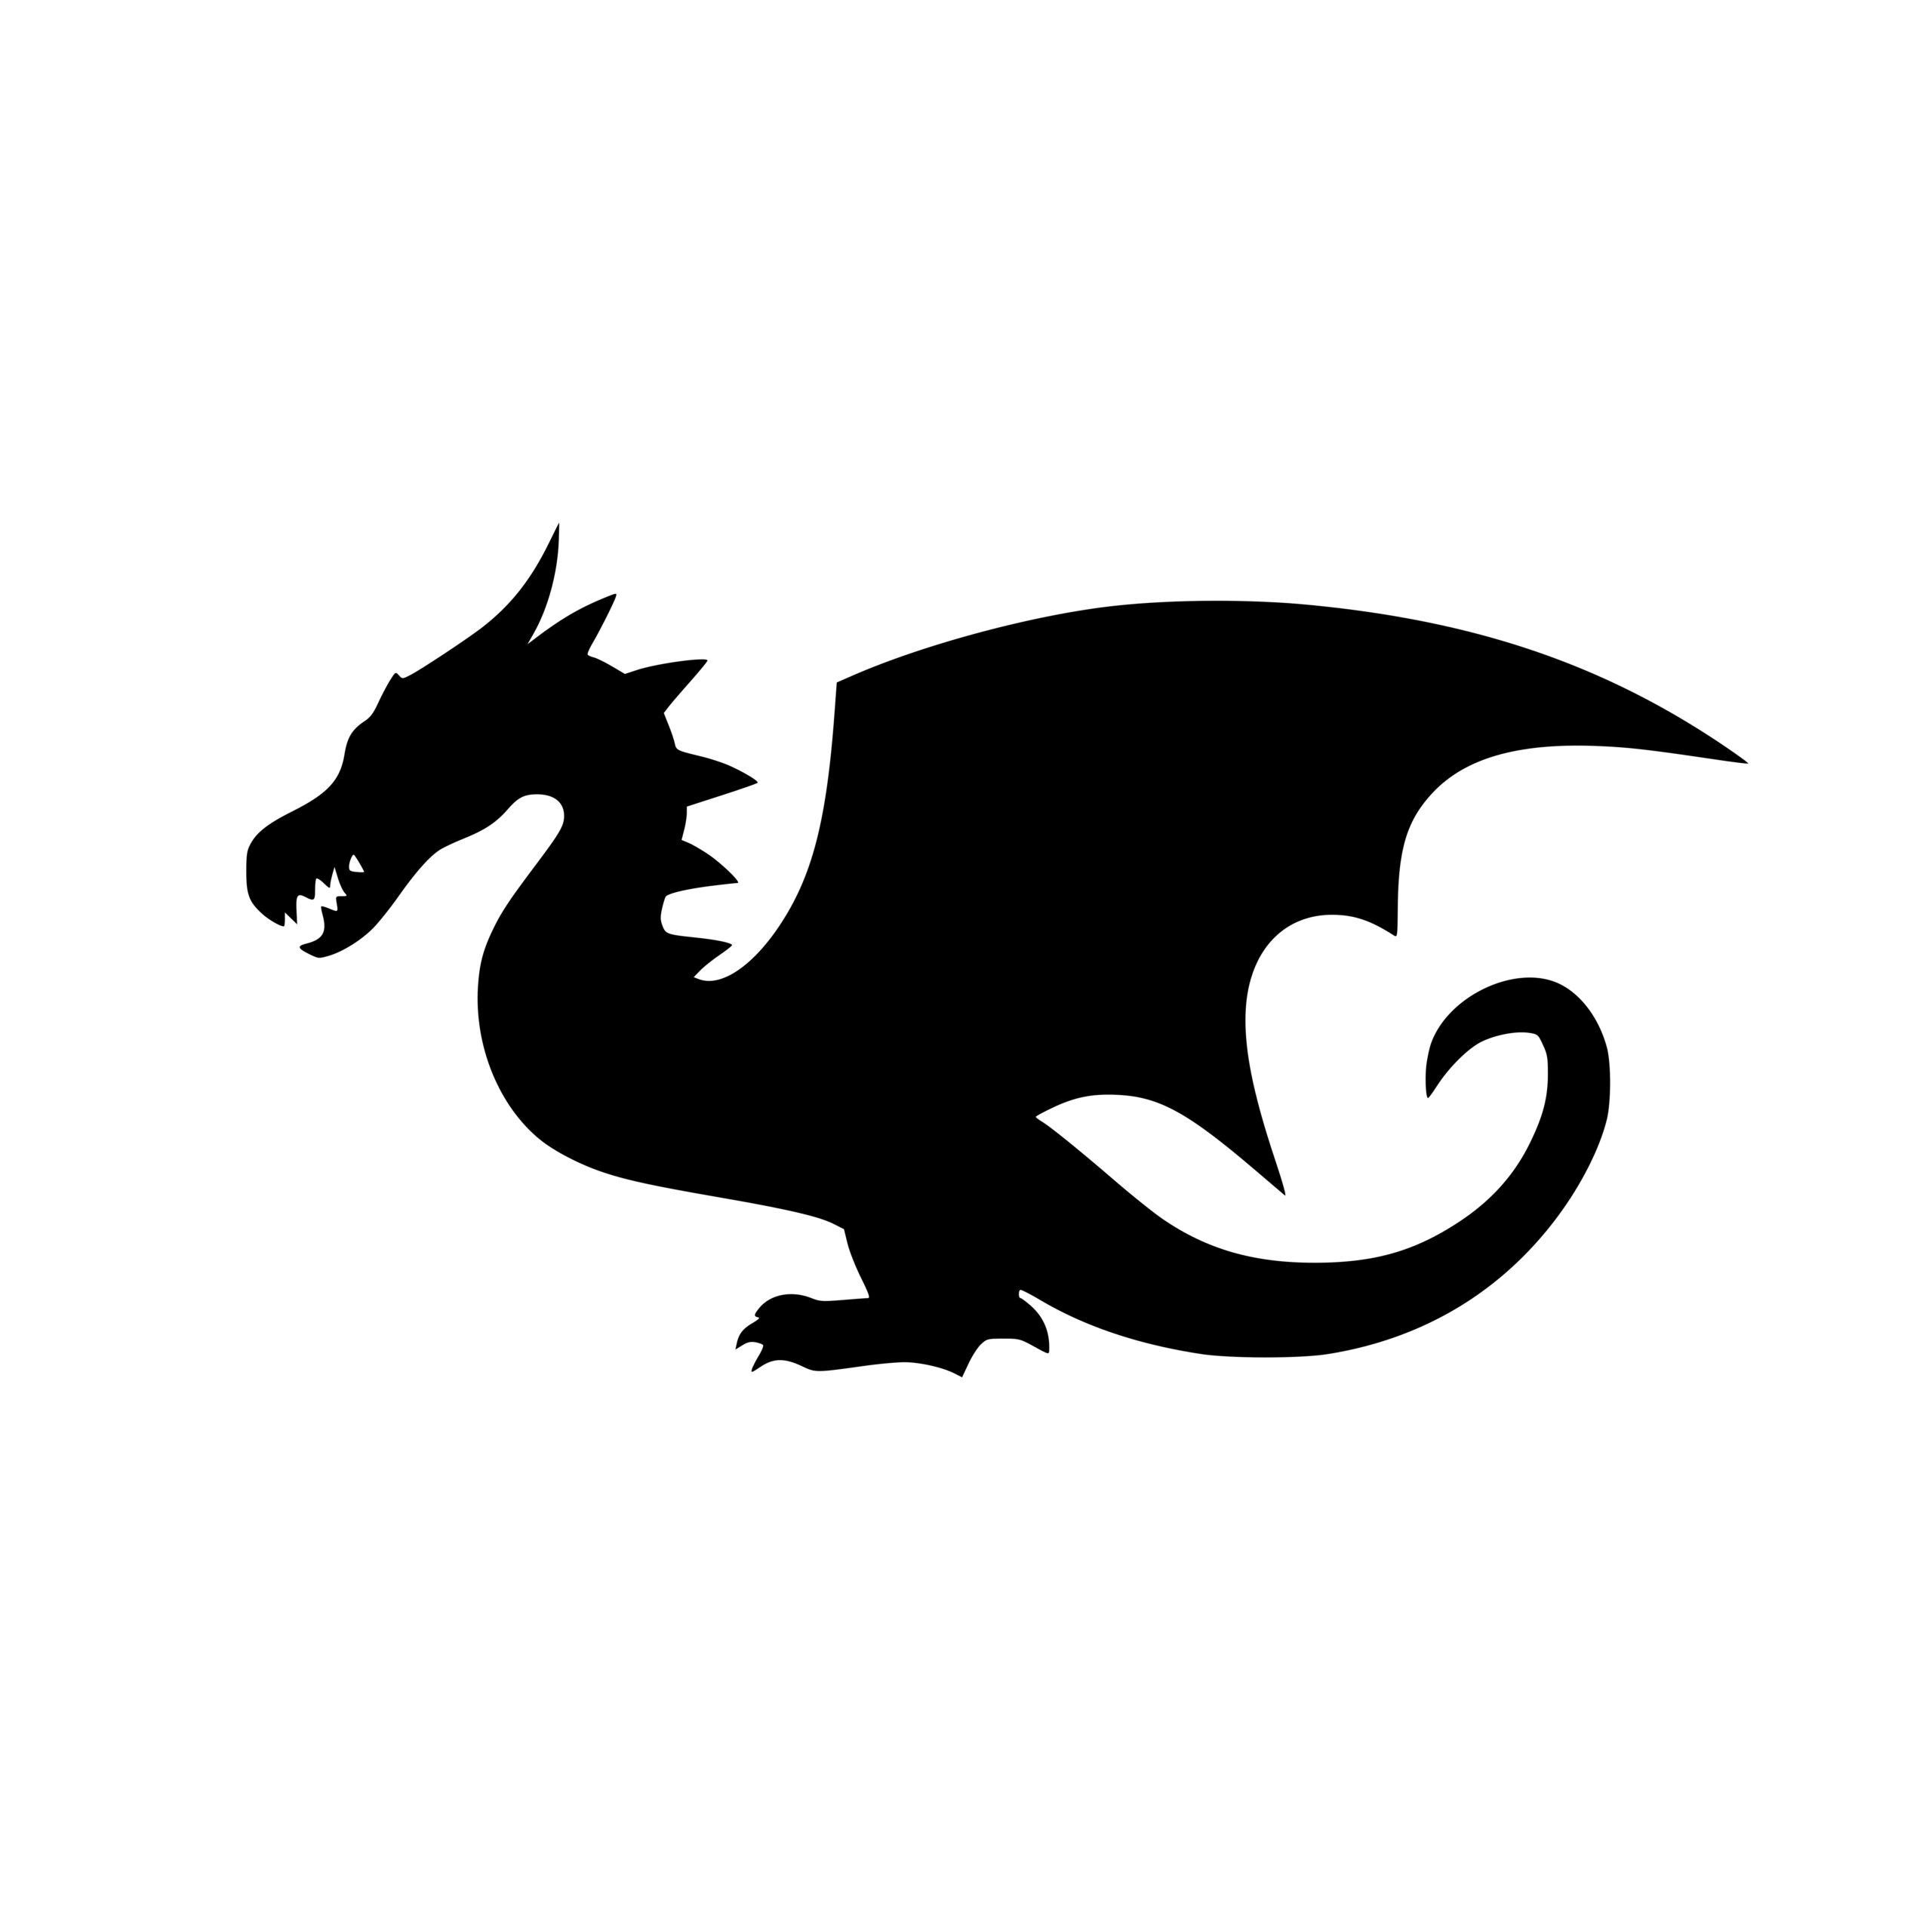 Majestic Dragon SVG File for Cricut, Laser, Silhouette, Cameo